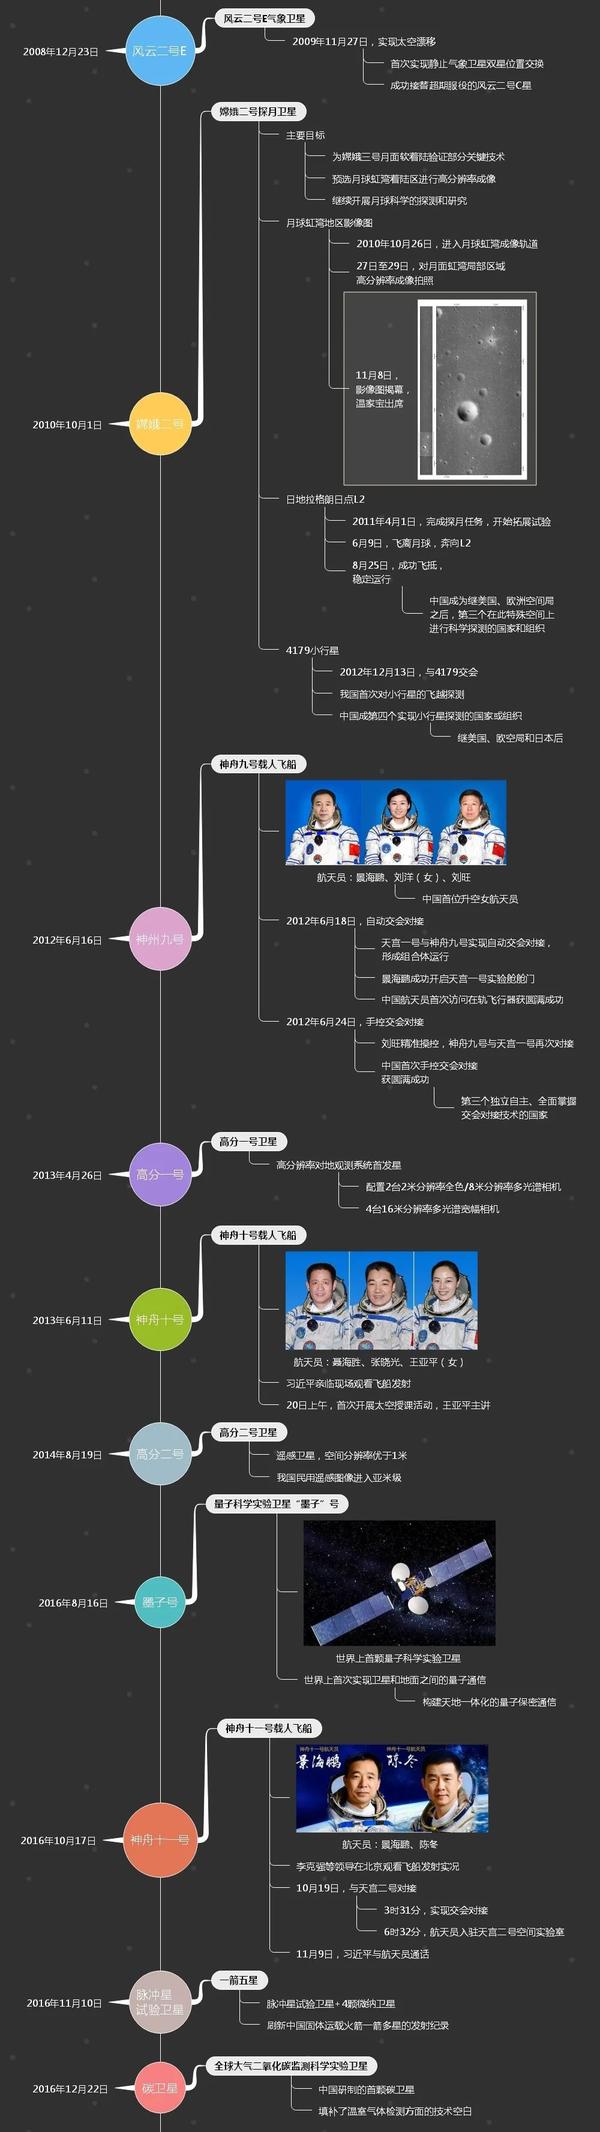 中国航天65年大事记时间线导图